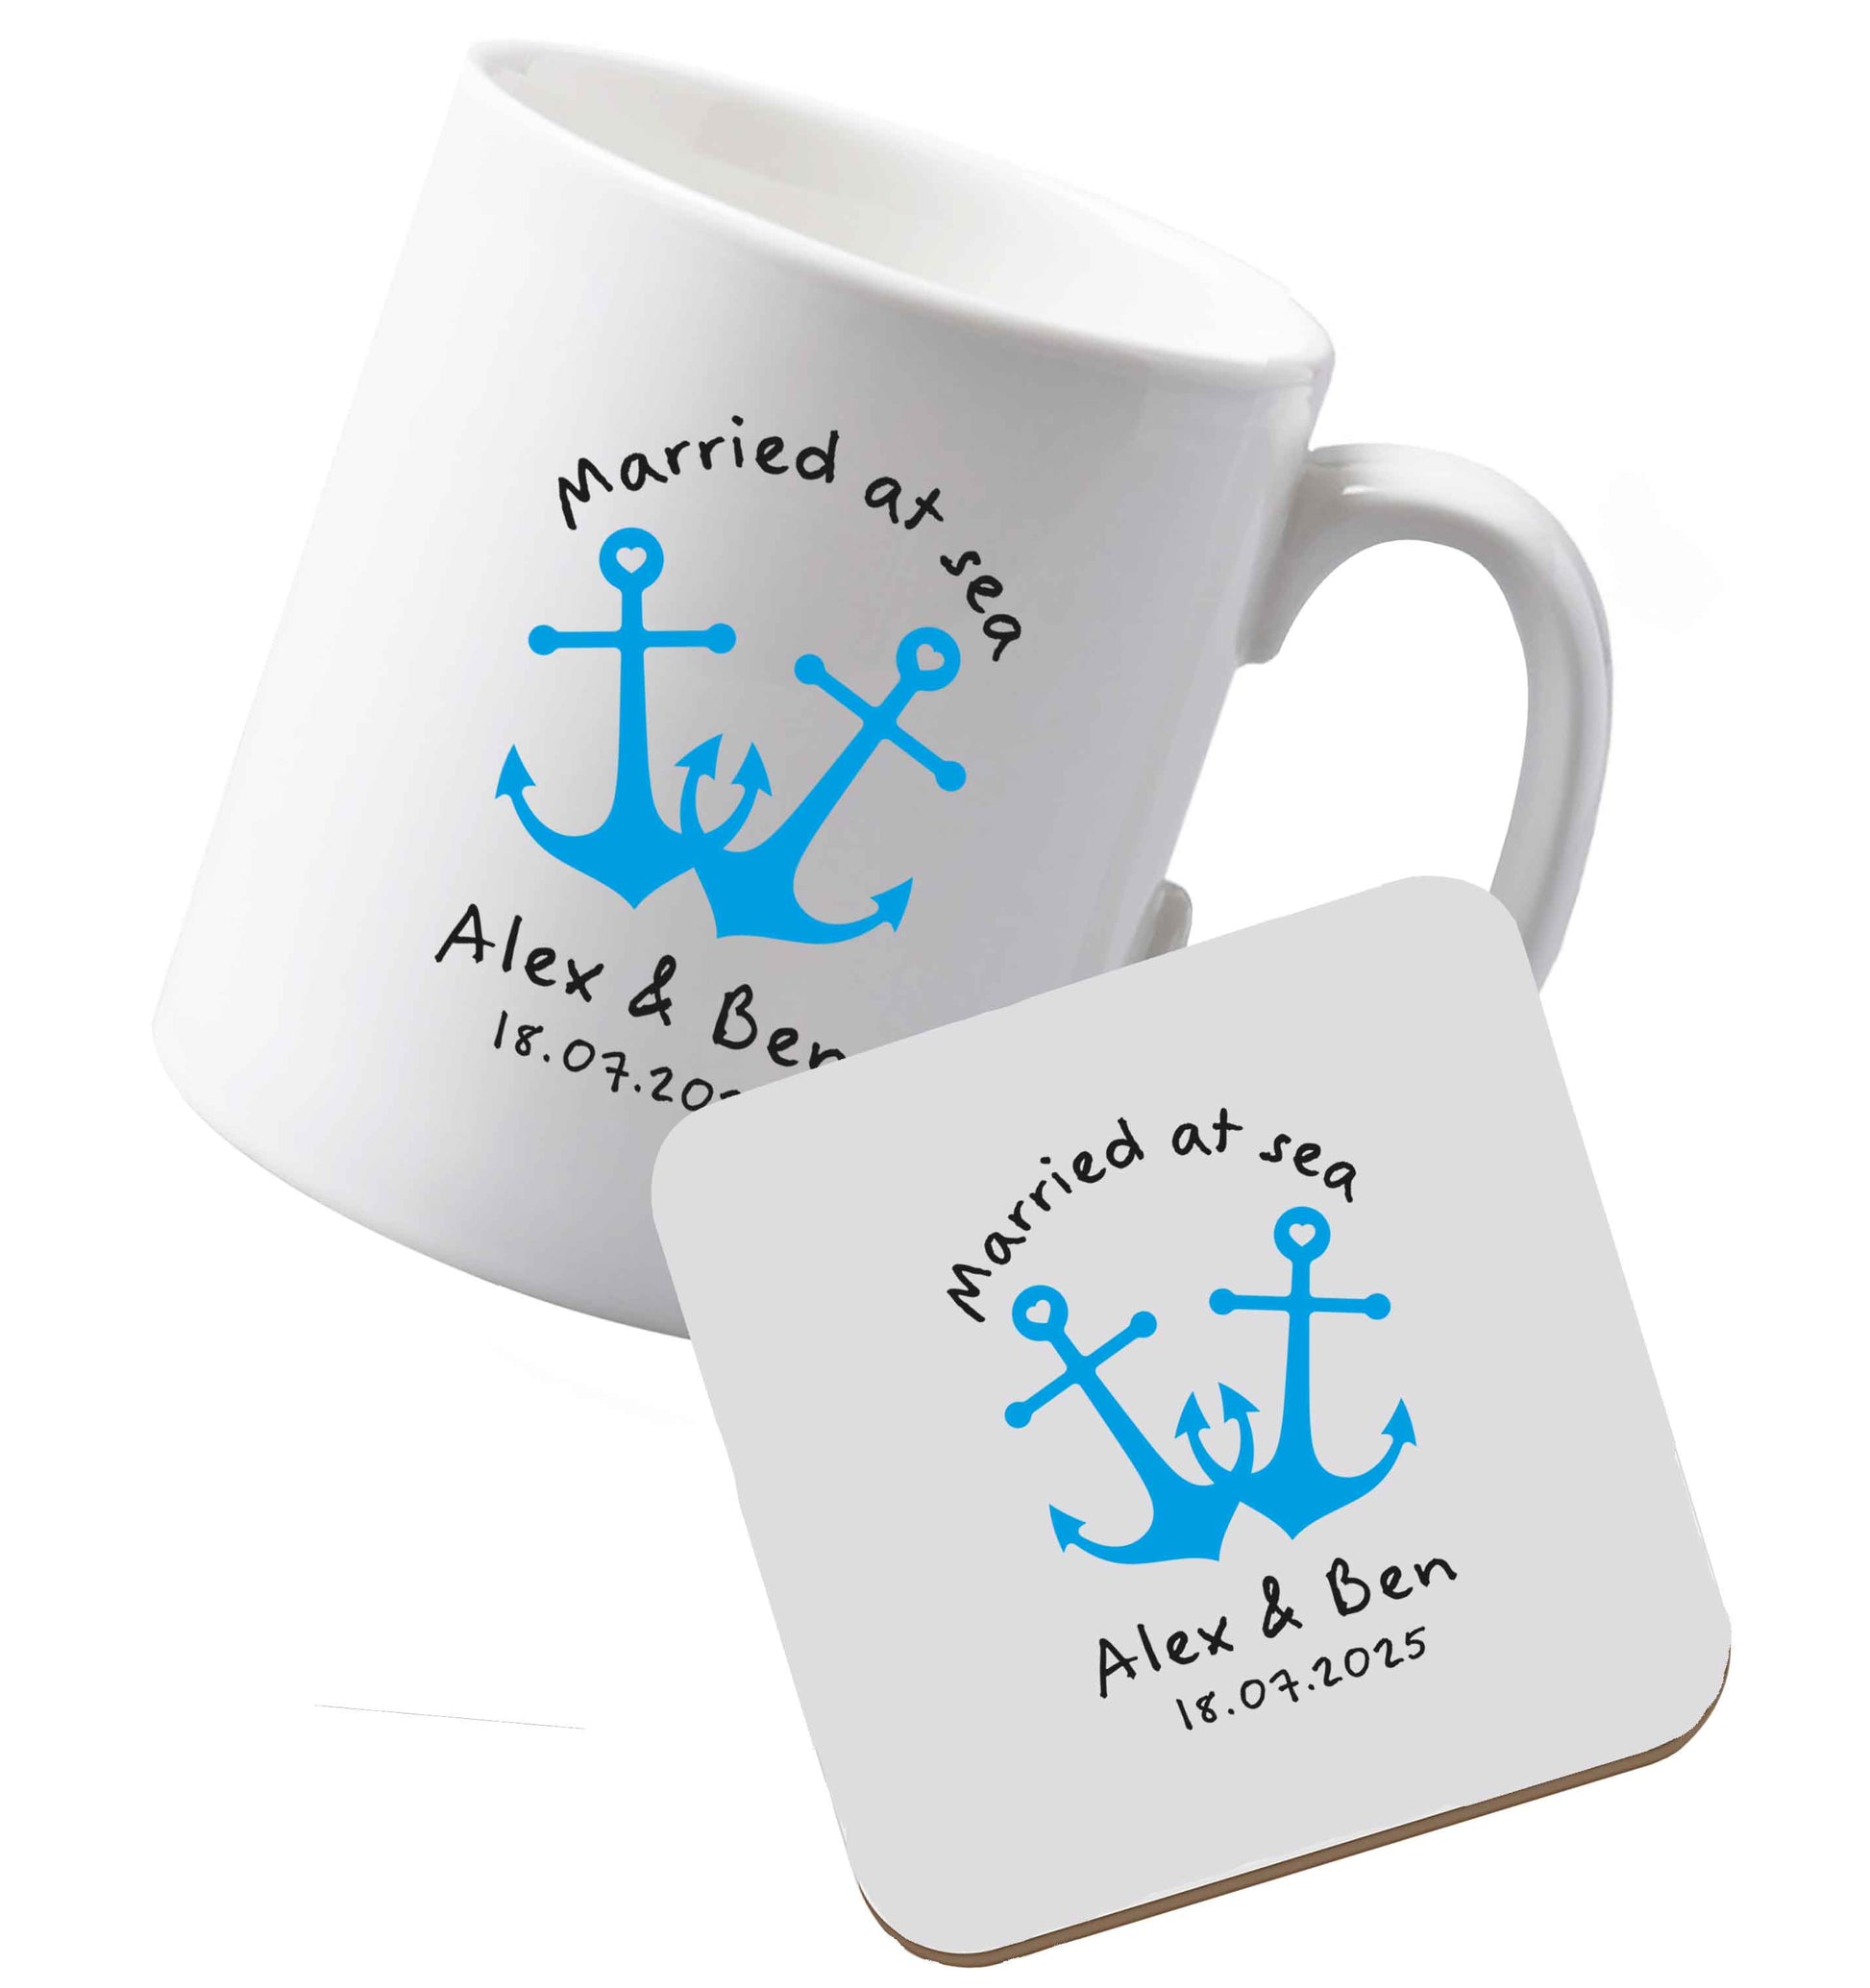 10 oz Ceramic mug and coaster Married at sea blue anchors both sides